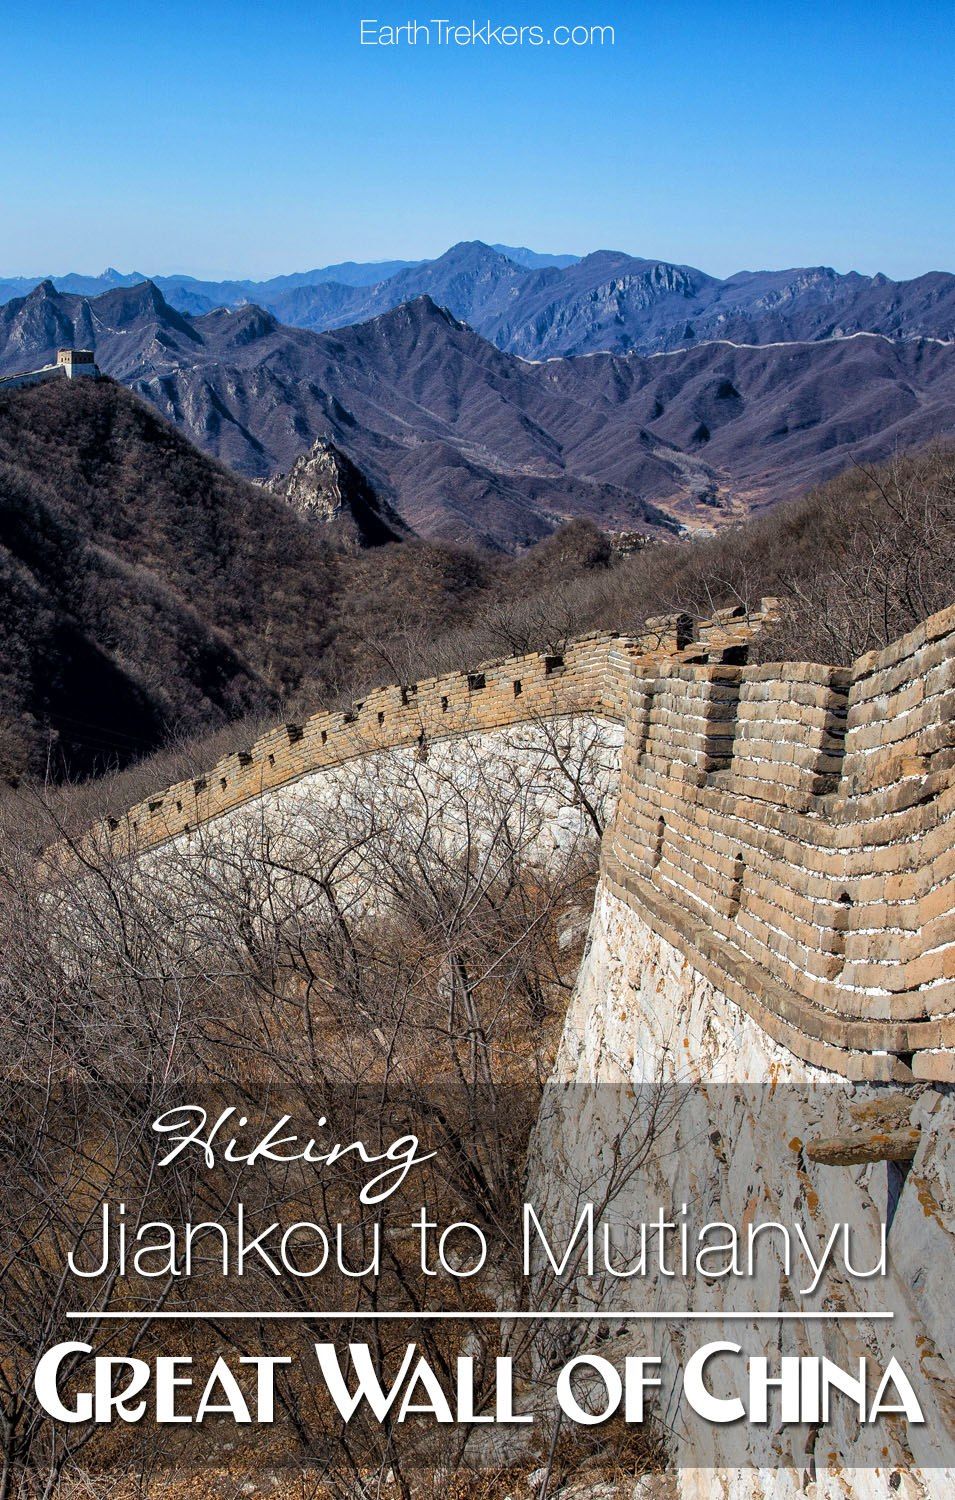 Hiking Jiankou to Mutianyu Great Wall of China